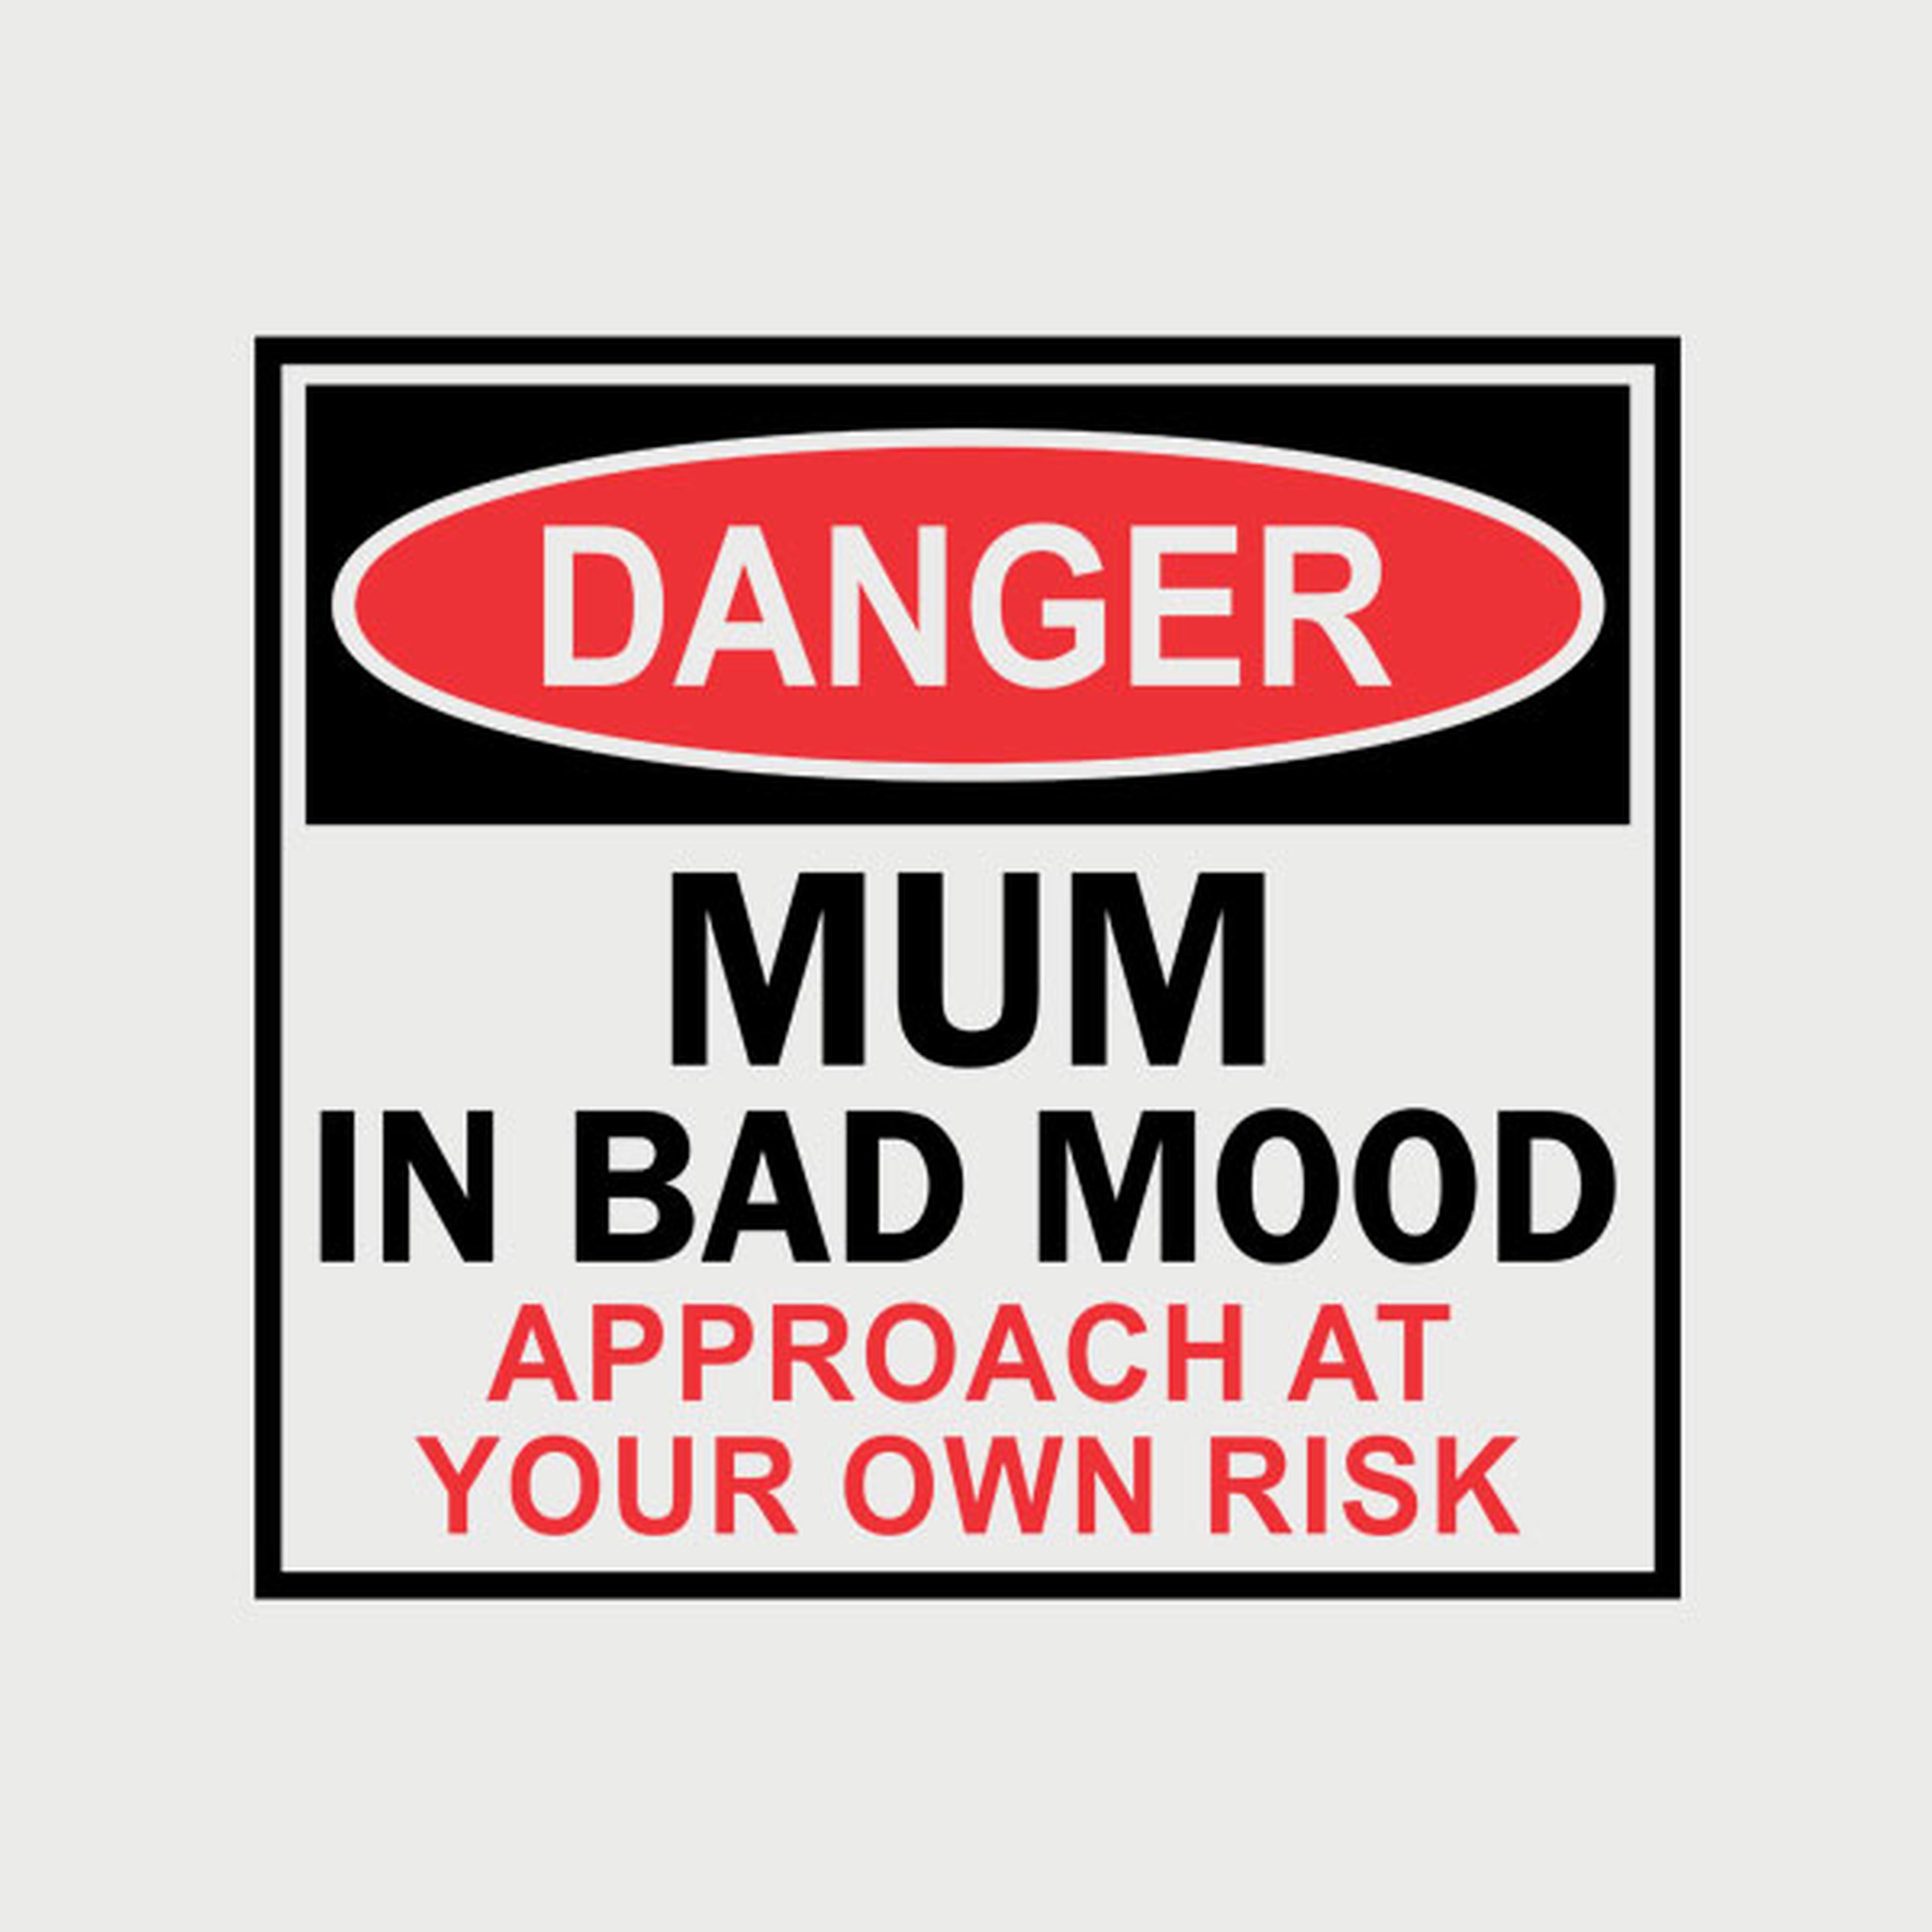 Mum in bad mood